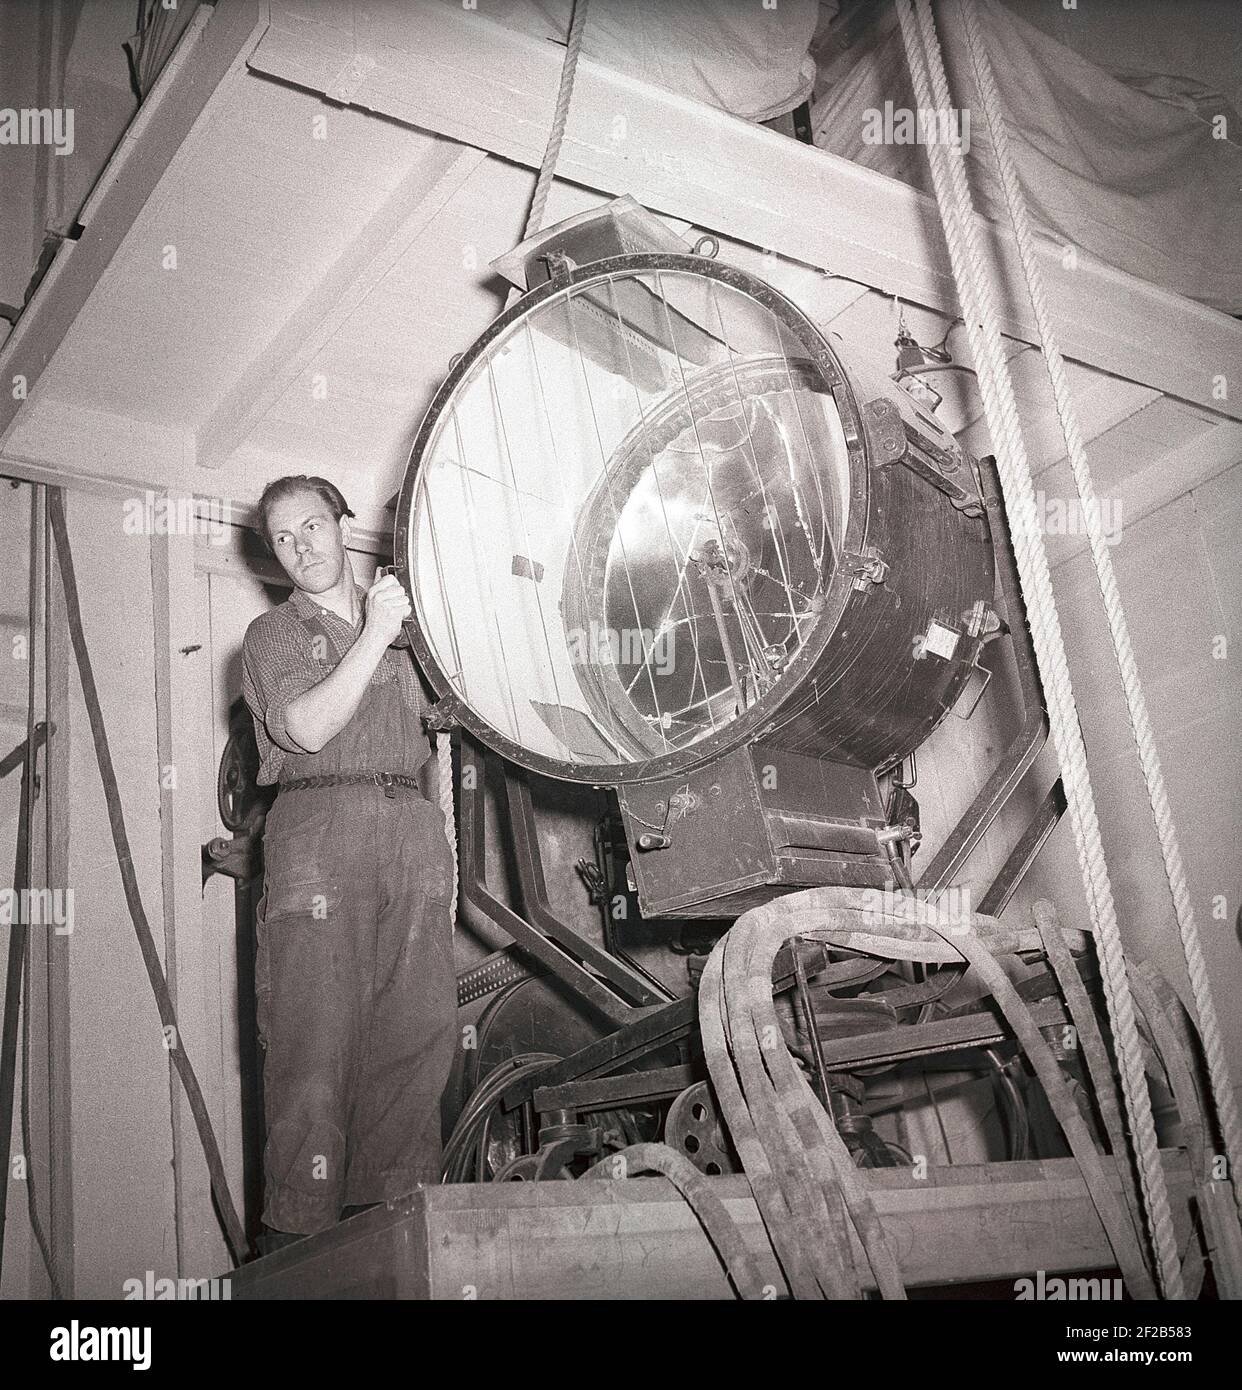 Filmstudio in der 1940s. Ein Mann, der an dem Filmset arbeitet, handhabt die riesige Lampe, mit der die Filmszene während der Aufnahme beleuchtet wird. Aufgenommen im größten Filmstudio in Schweden Filmstaden Råsunda während der Dreharbeiten von Ingmar Bergmans Film Frau ohne Gesicht. Es hatte Premiere september 16 1947. Schweden 1947. ref. AB5-10 Stockfoto